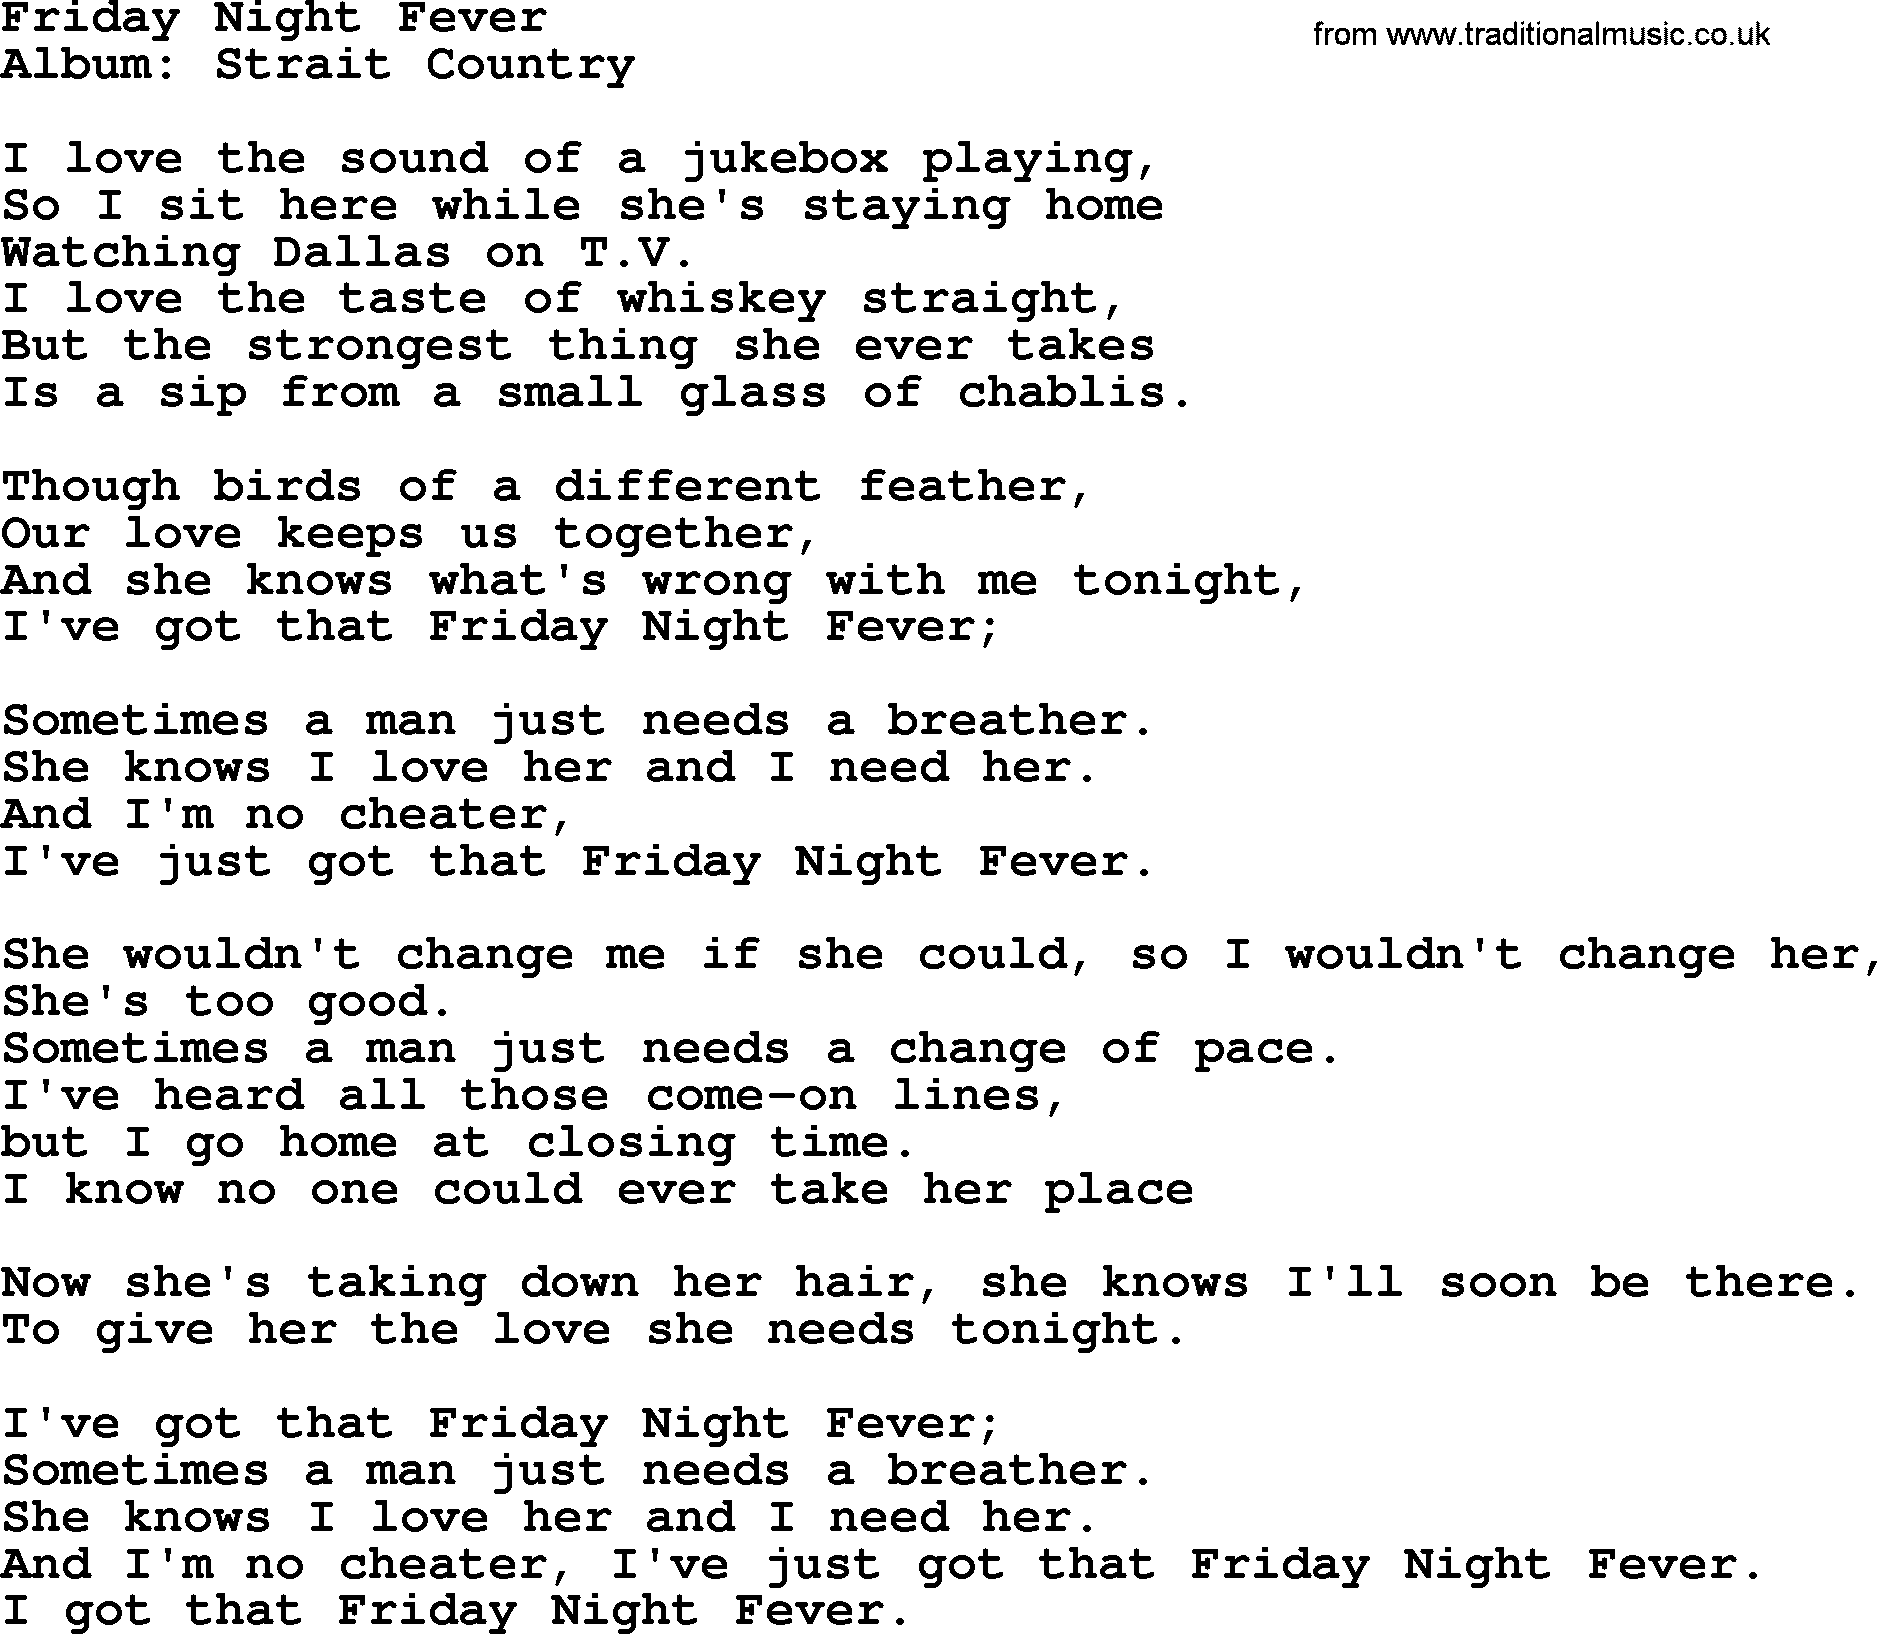 Friday Night Fever, by George Strait - lyrics1877 x 1634